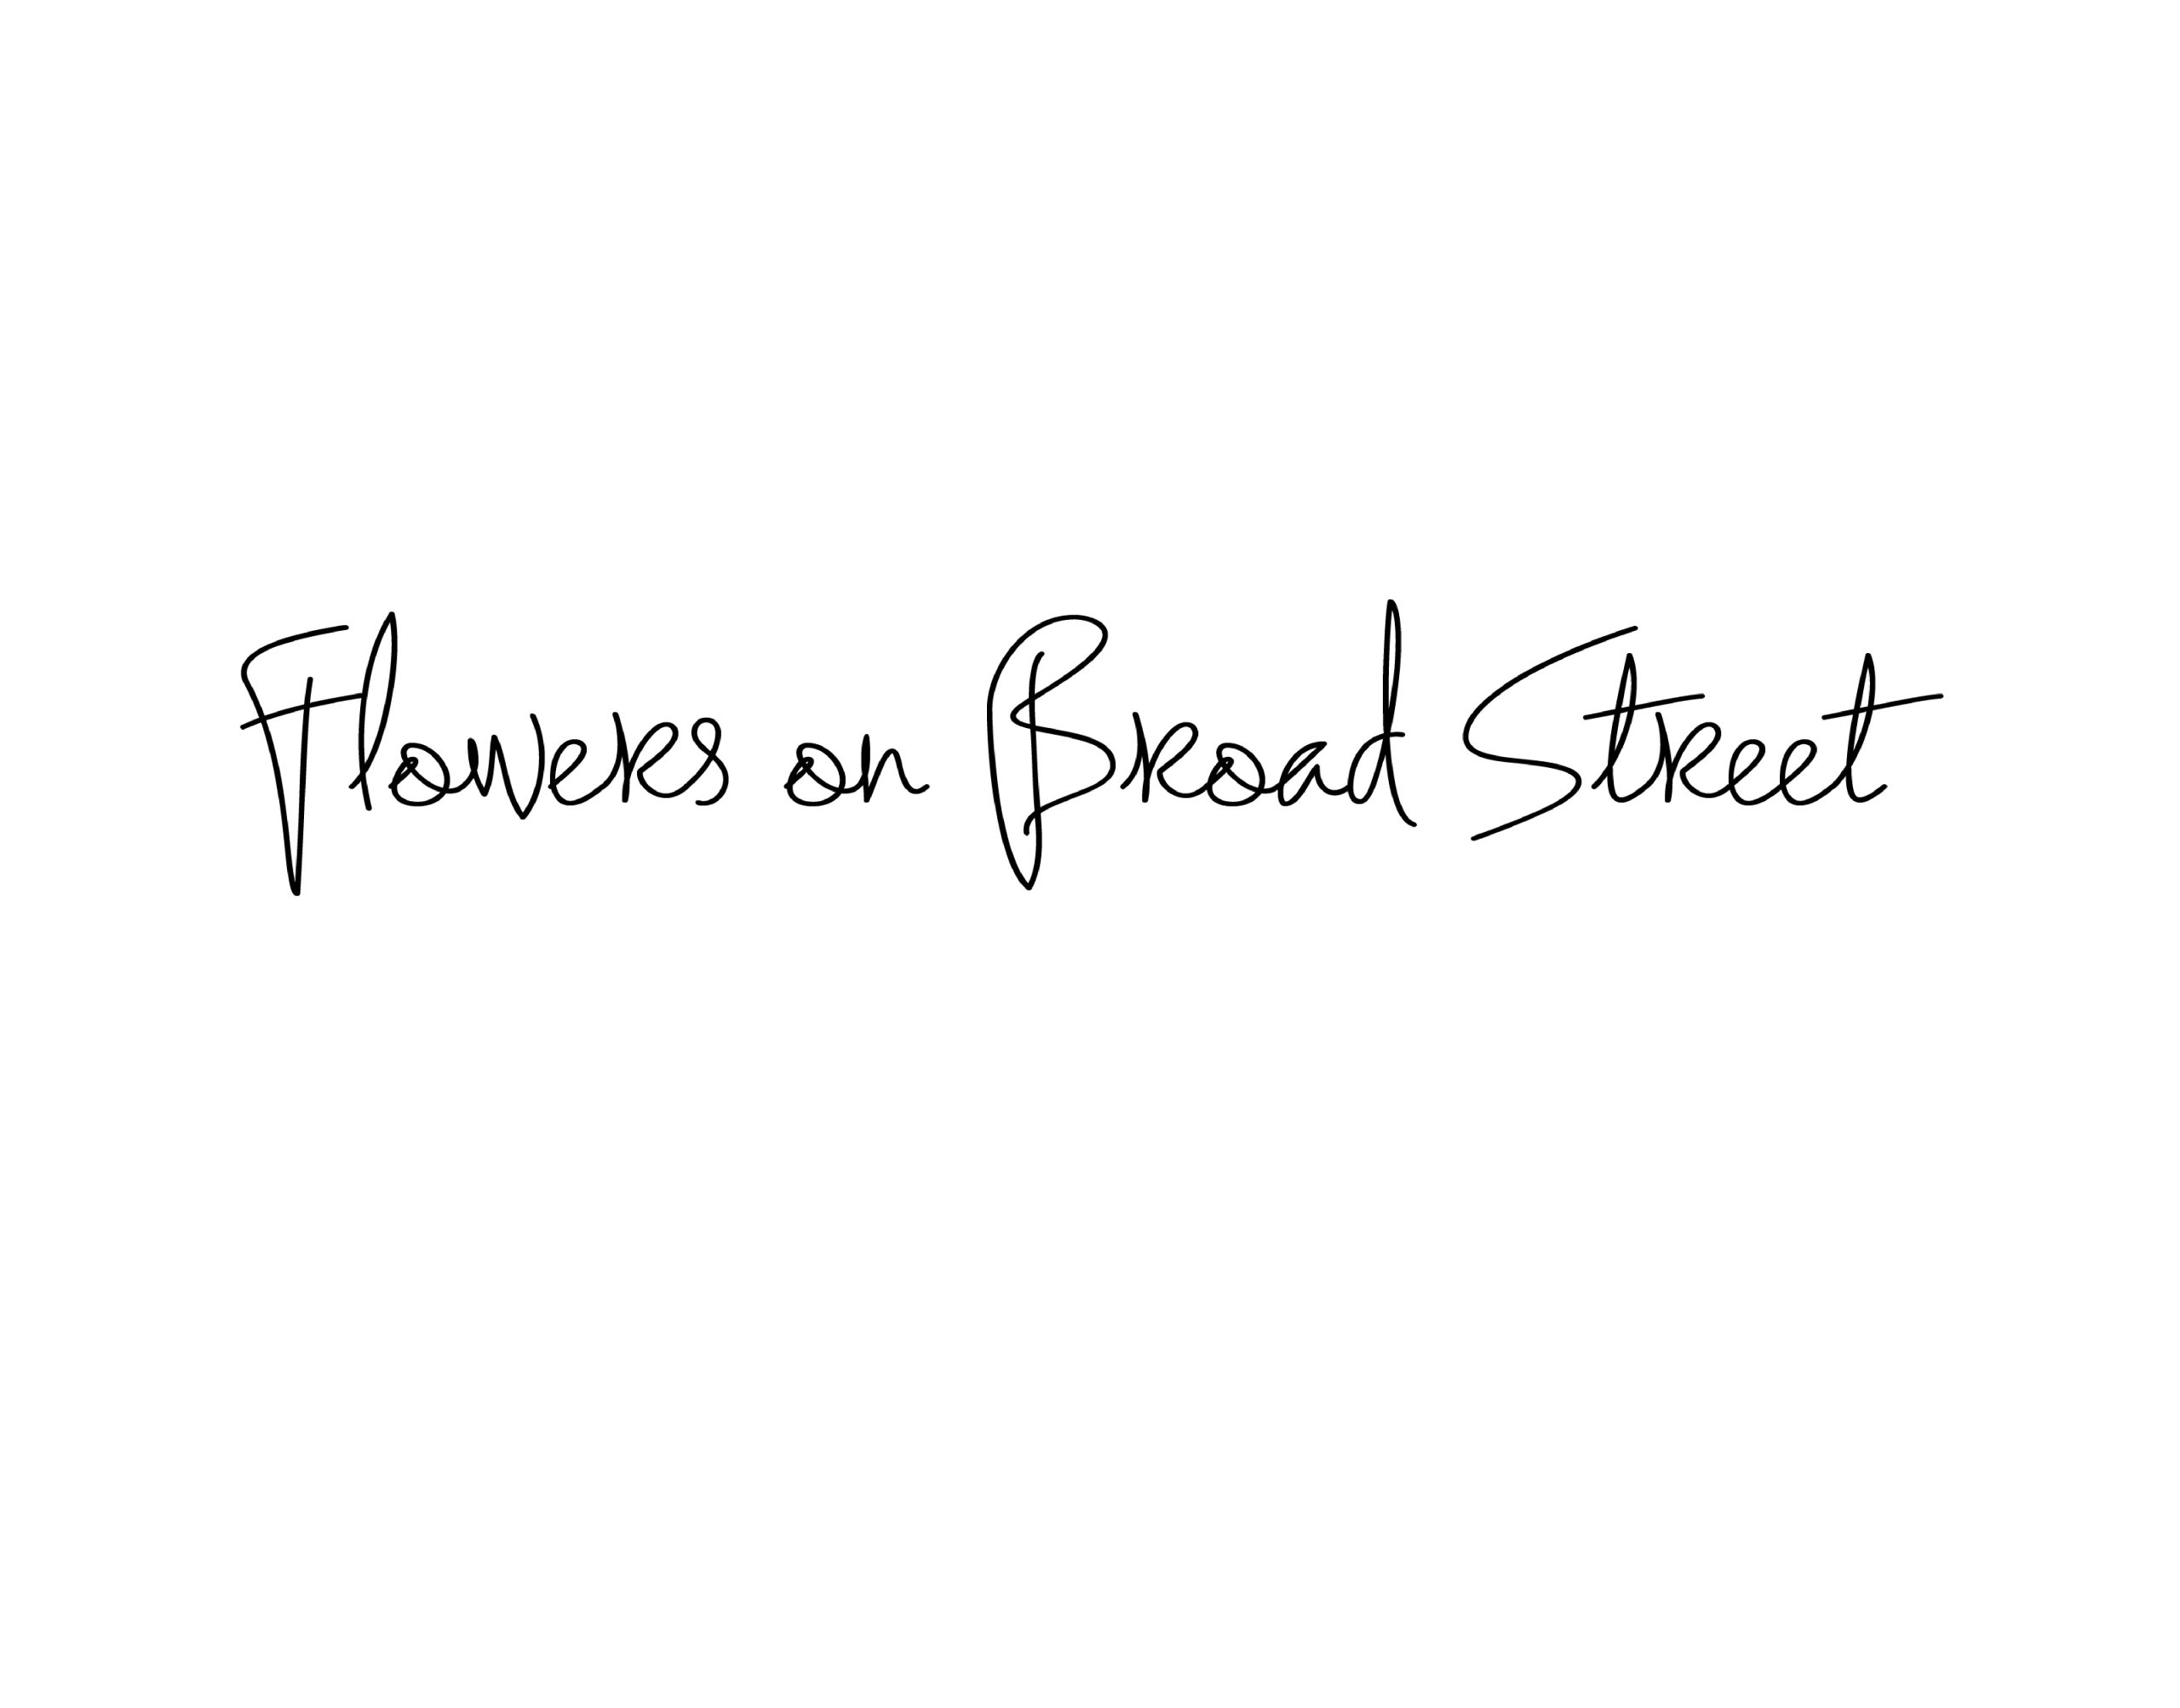 Flowers on Broad Street